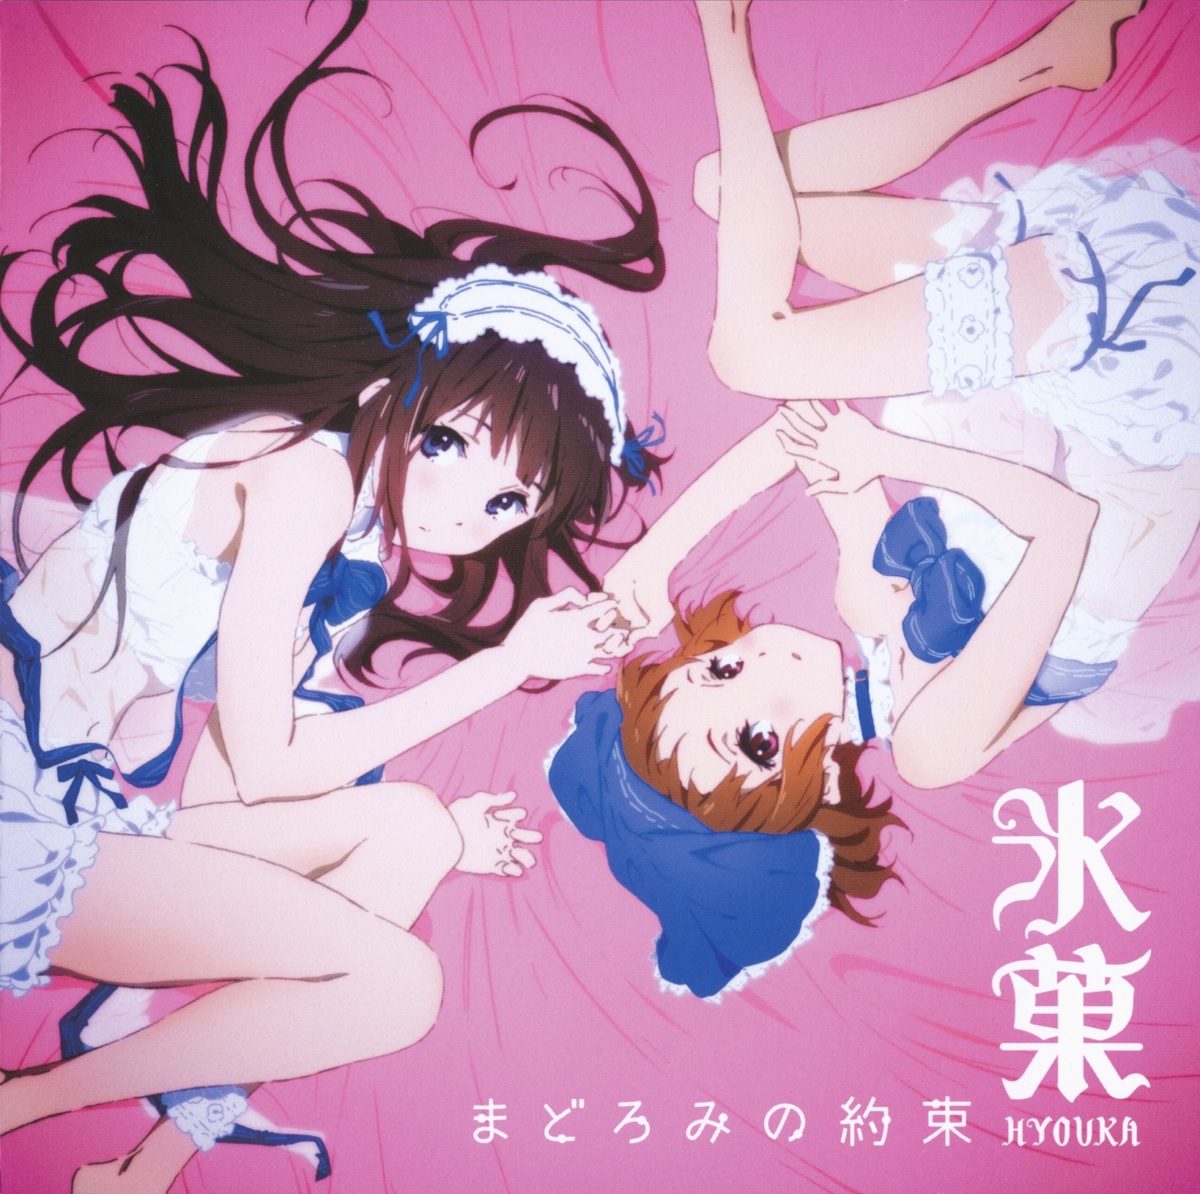 Cover for『Eru Chitanda (Satomi Sato) & Mayaka Ibara (Ai Kayano) - Romance wa Mada Hayai』from the release『Madoromi no Yakusoku』